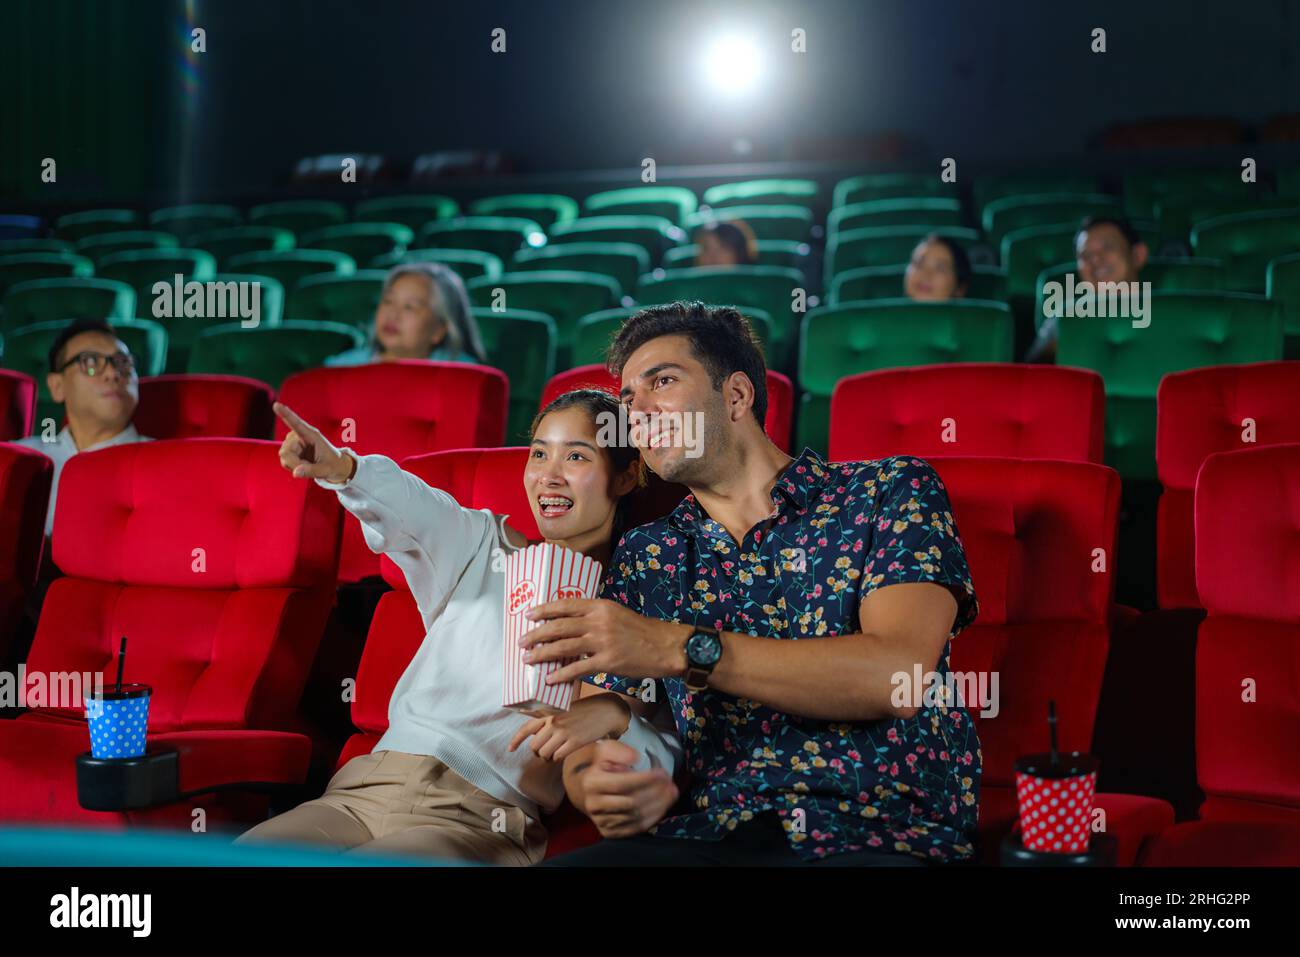 Le coppie si divertono guardando i film mentre tengono popcorn, creando un'esperienza serale al cinema accogliente e divertente. Foto Stock